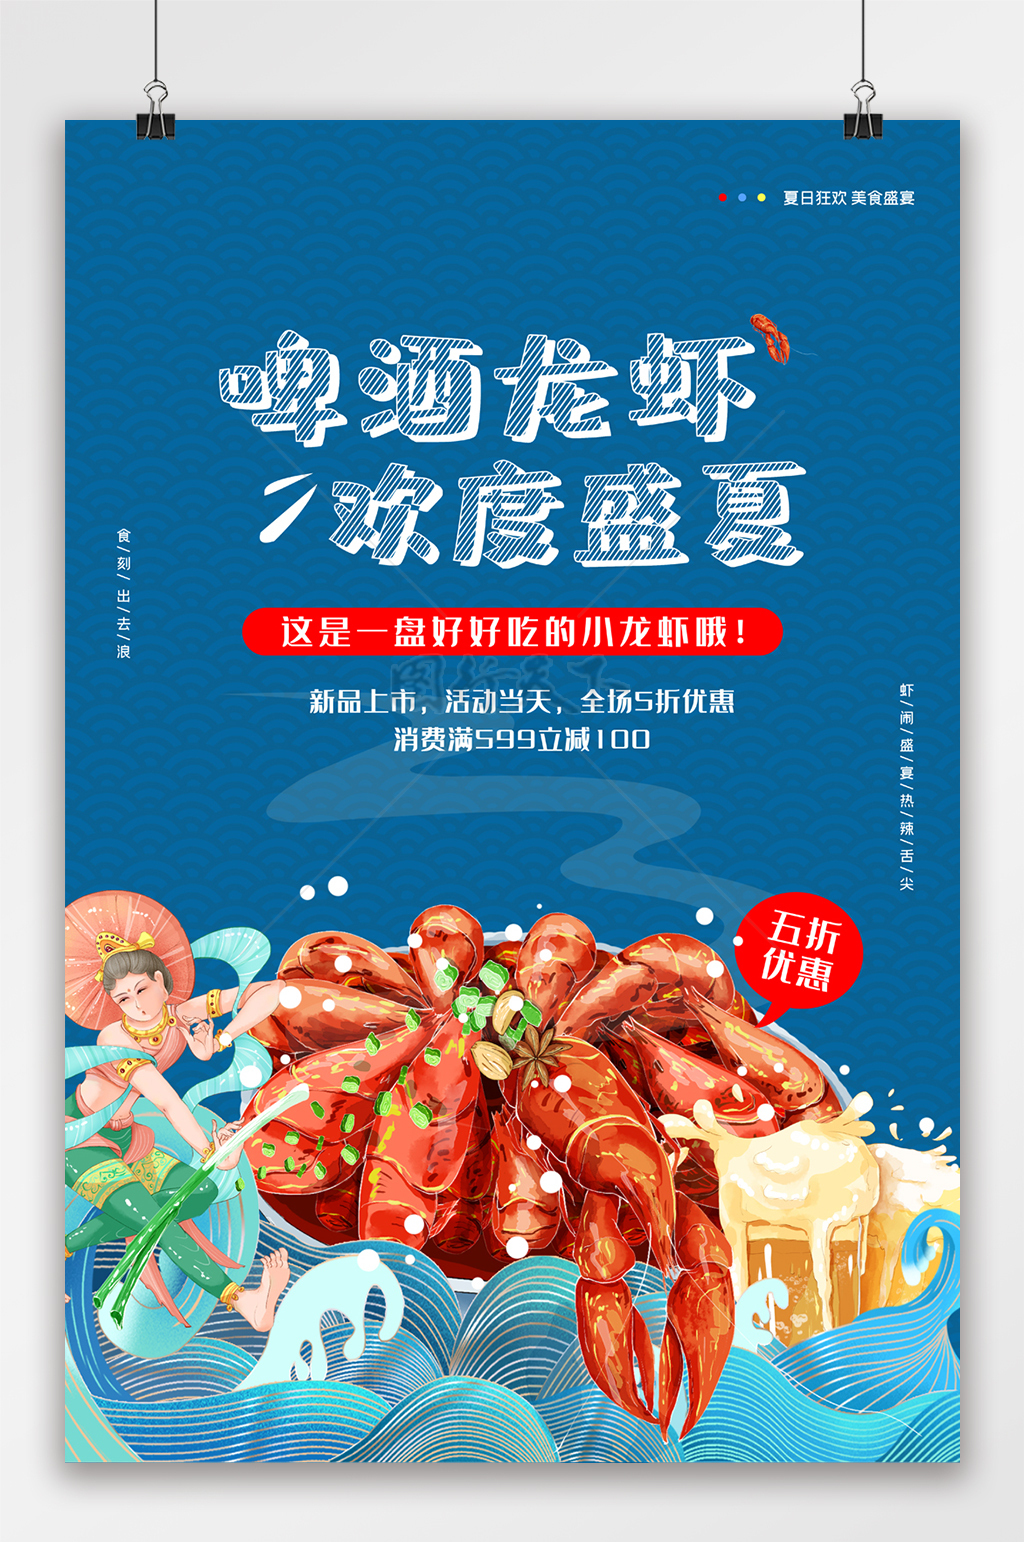 美食盛宴啤酒龙虾夏日美食蓝色背景海报